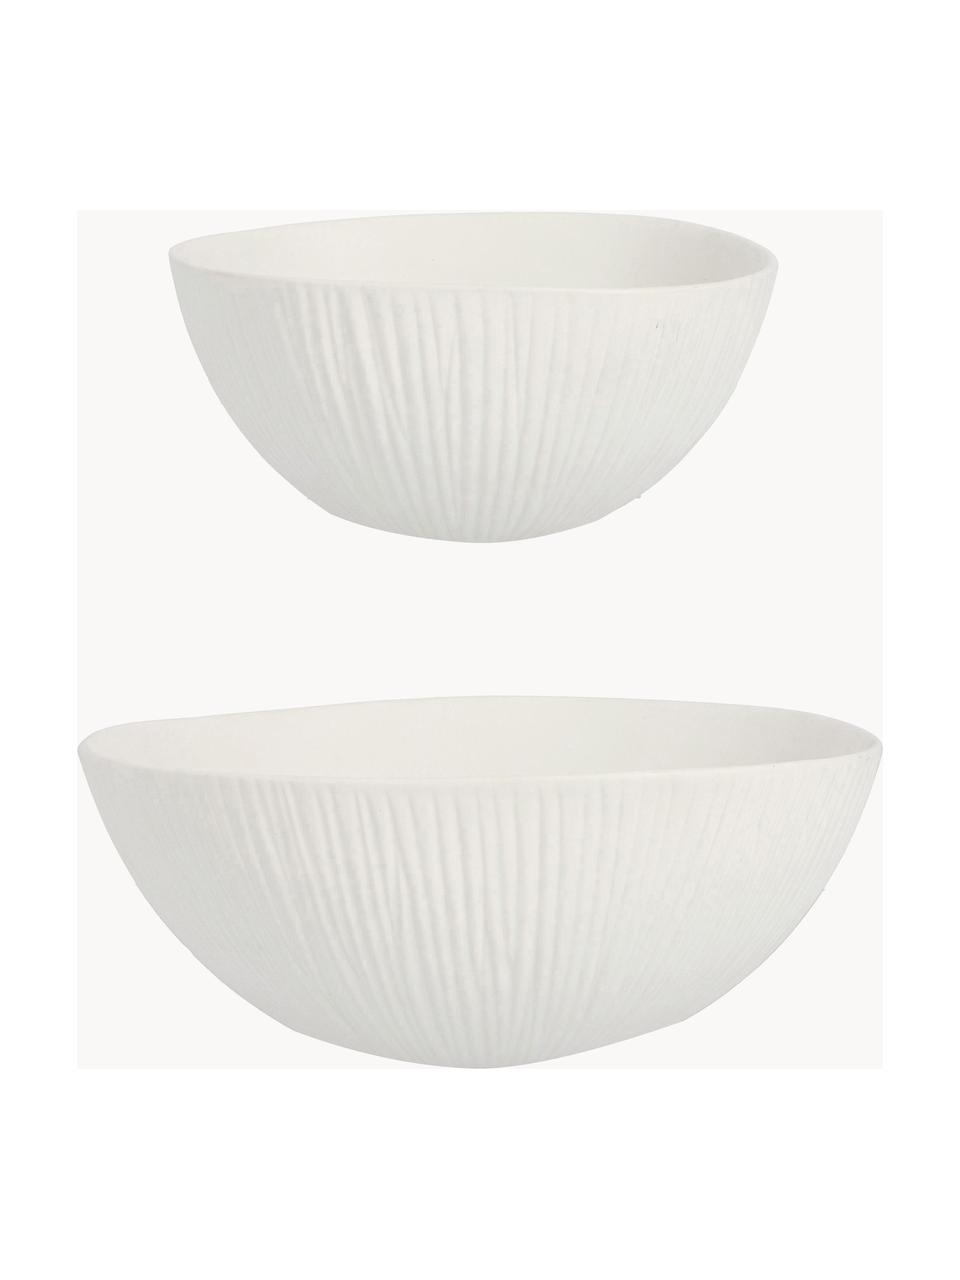 Keramik-Deko-Schalen Striped, 2er-Set, Keramik, Weiss, Set mit verschiedenen Grössen